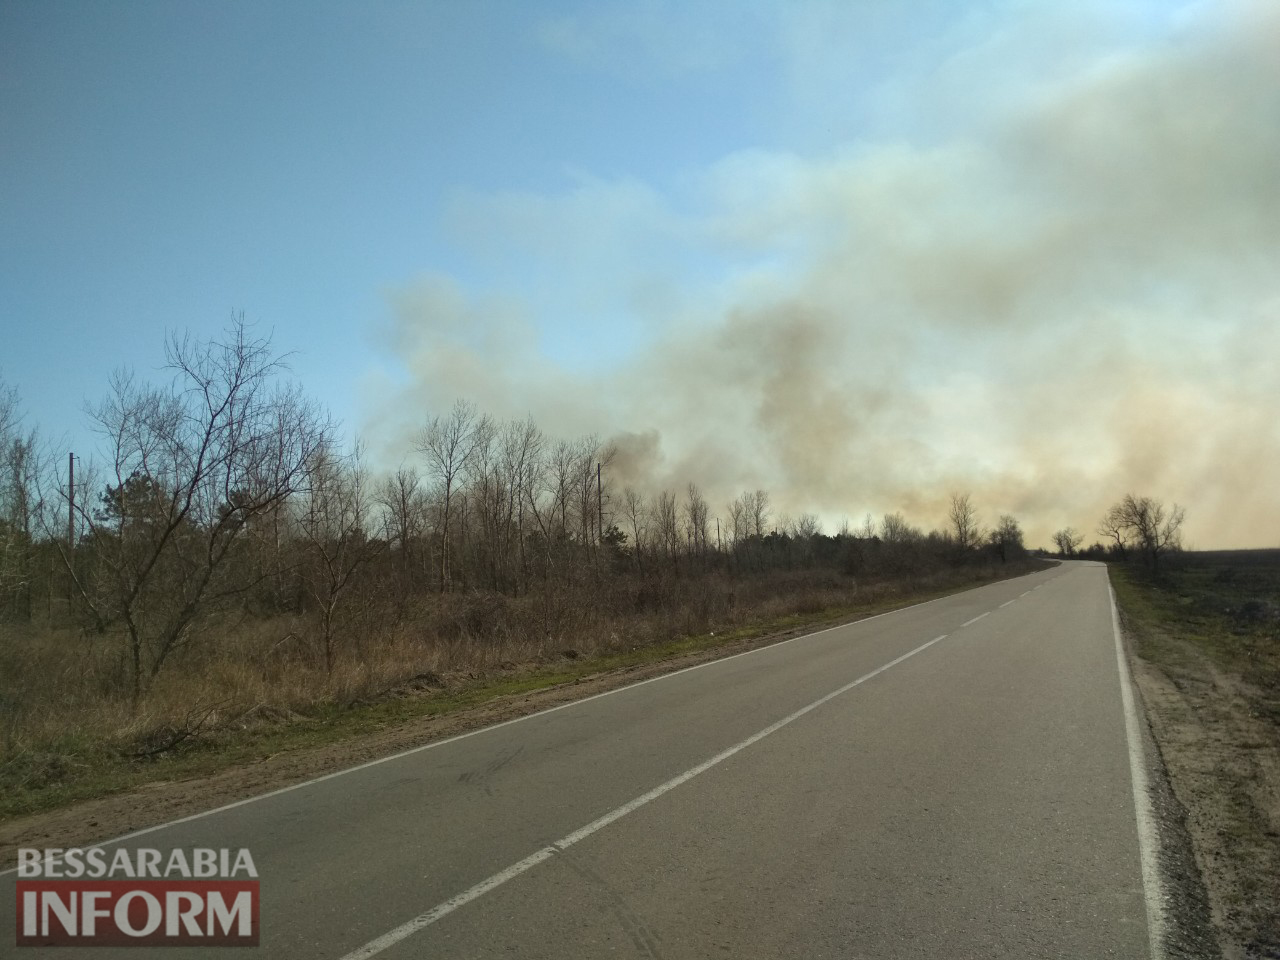 Из-за сильного задымления от пожара в Вилковском лесничестве полиция перекрыла автодорогу Т-1607.